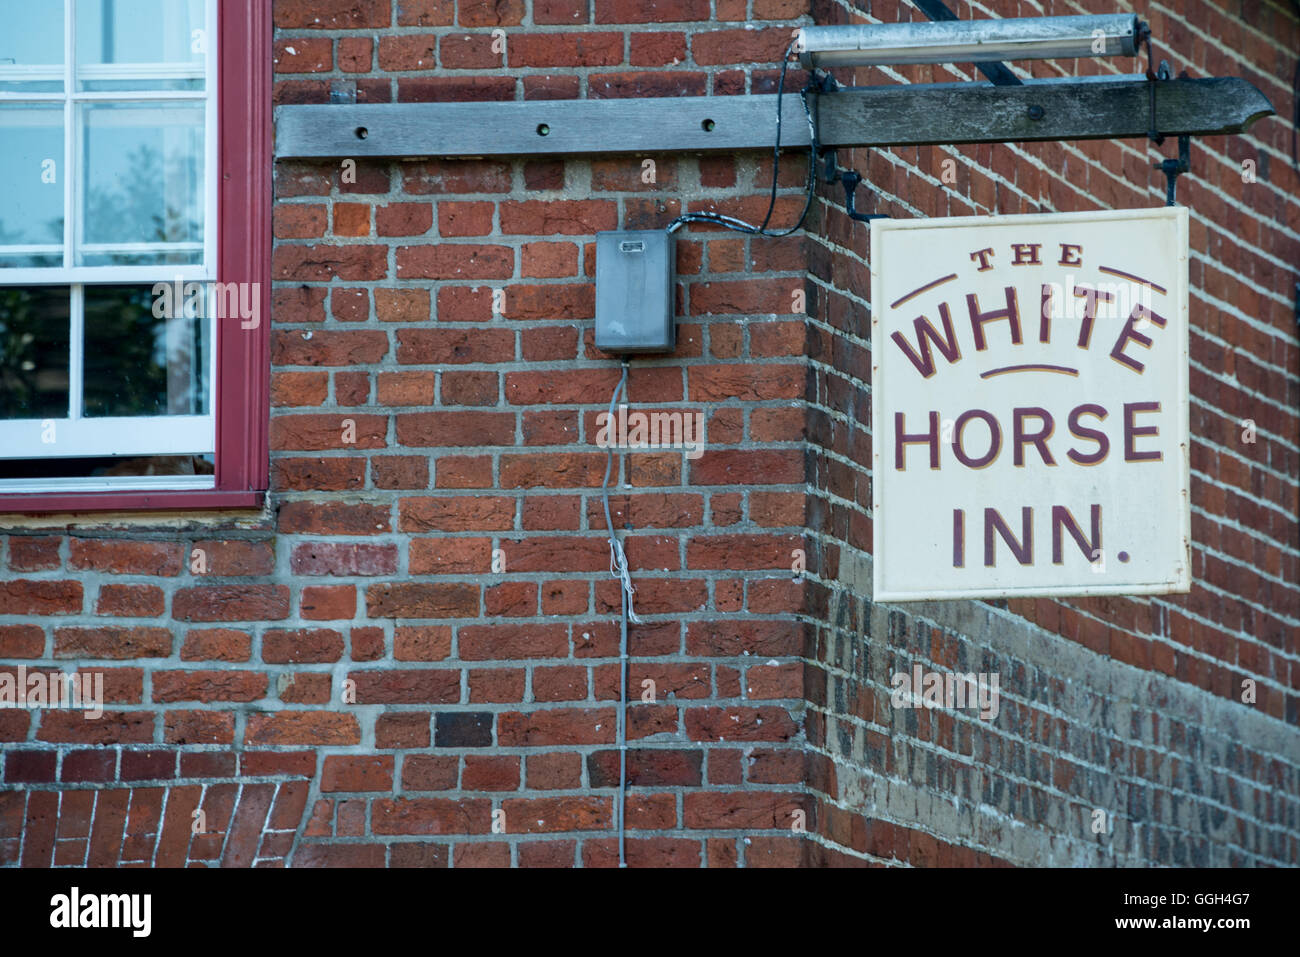 The White Horse Inn, Edwardstone Stock Photo